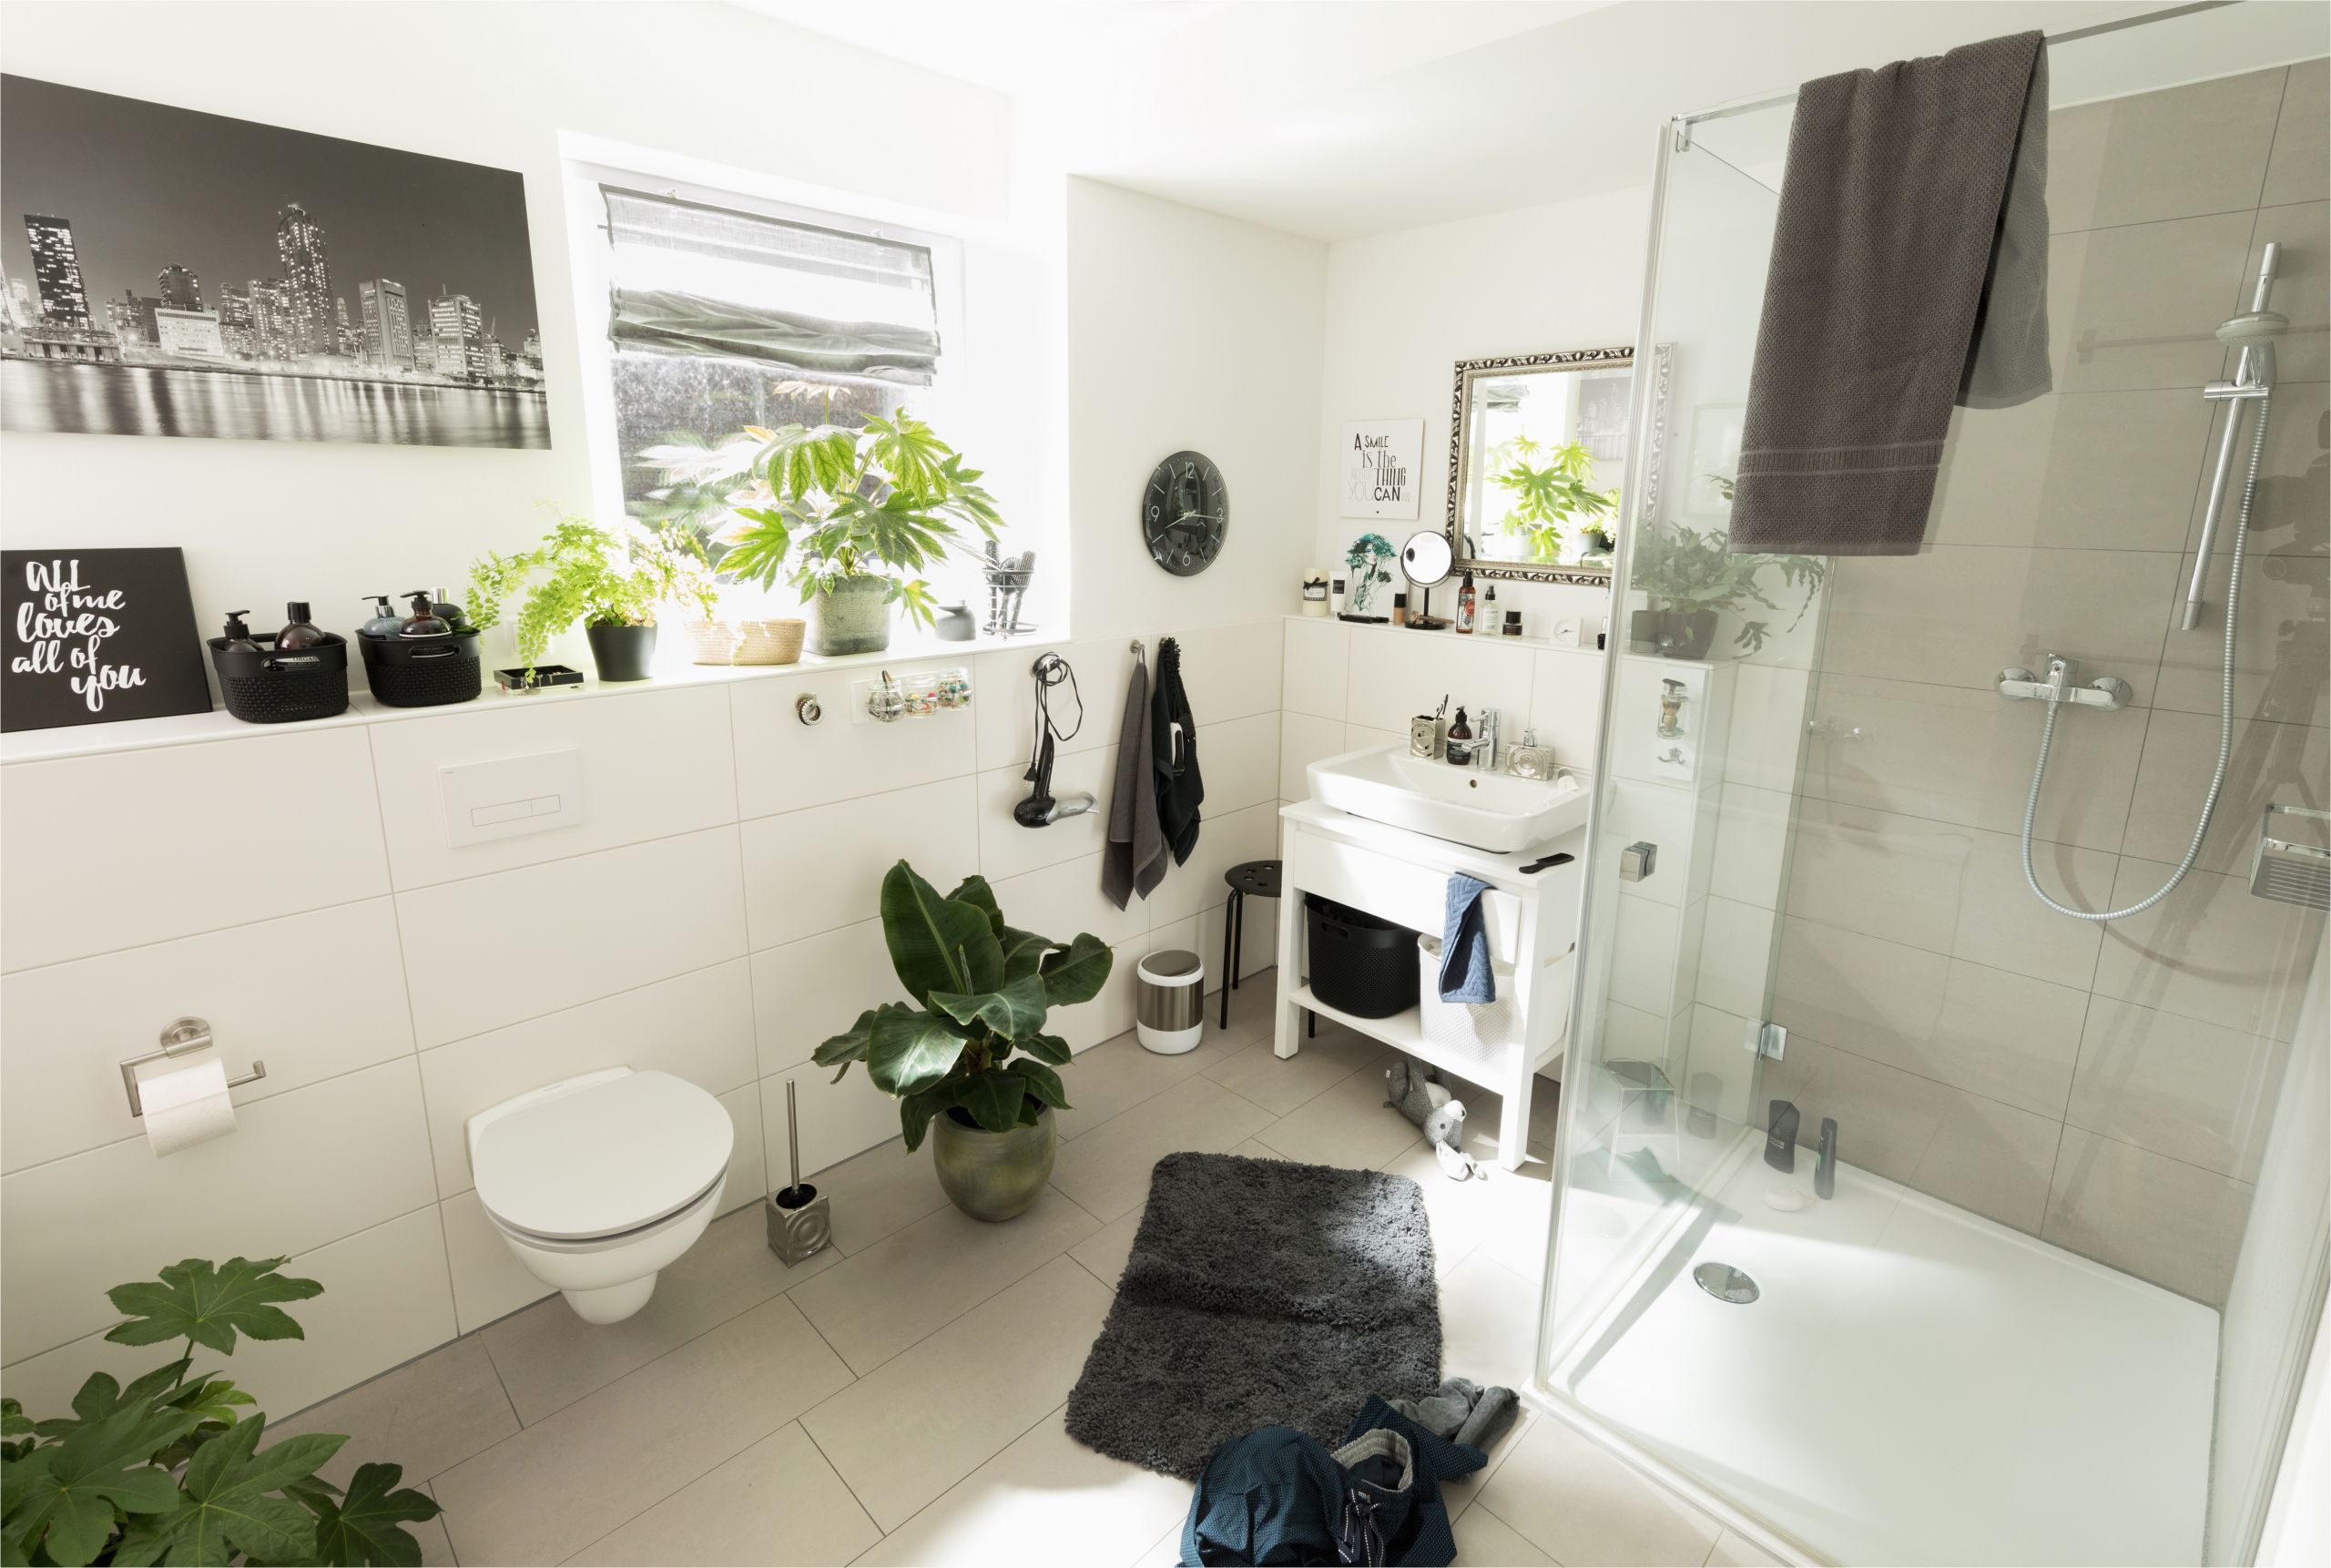 grune deko ideen mit grunes 70er jahre badezimmer verschonern 49 und badezimmer duschkabine waschbecken toilette mit grune deko ideen